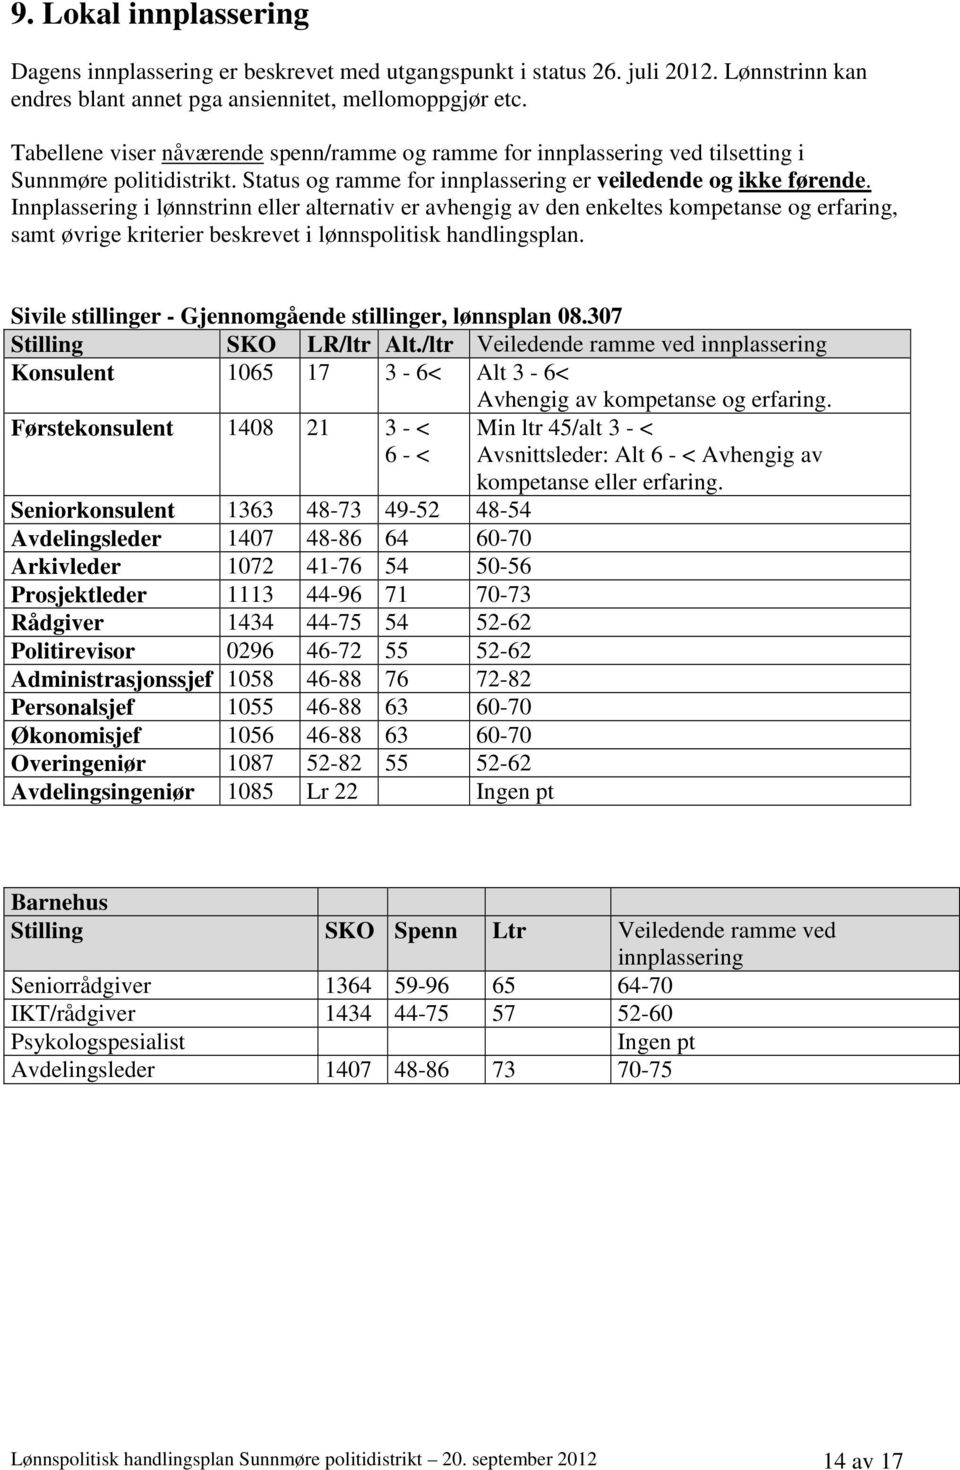 Lønnspolitisk handlingsplan for Sunnmøre politidistrikt - PDF Free Download